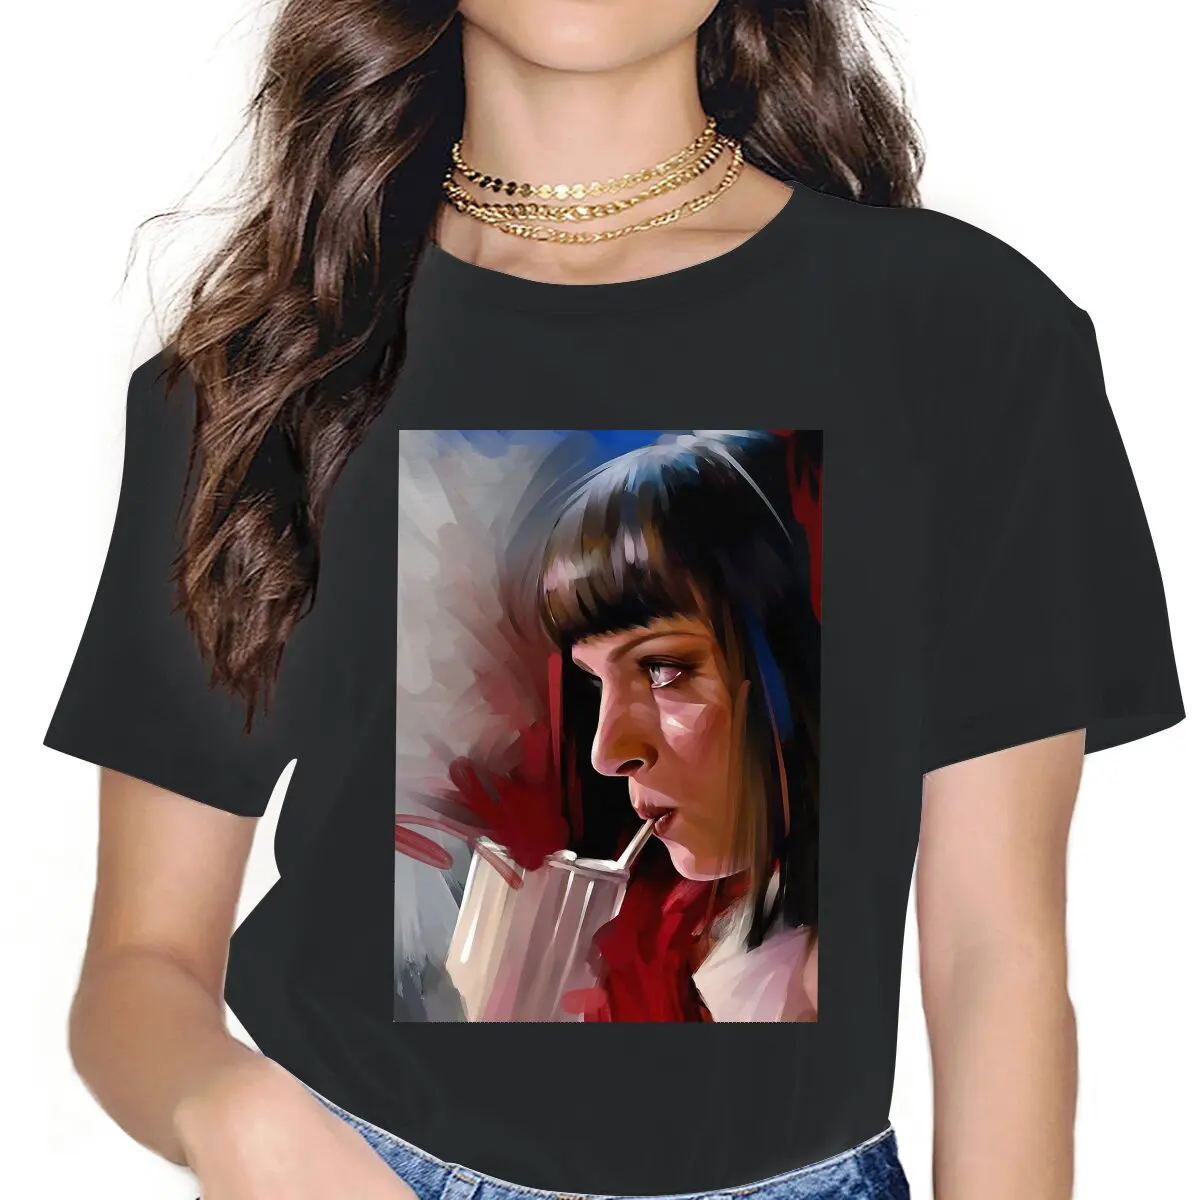 

Женская Классическая футболка Mia криминальной фантастики, черные комедийные топы из фильма, Забавные футболки с коротким рукавом и круглым вырезом, футболки